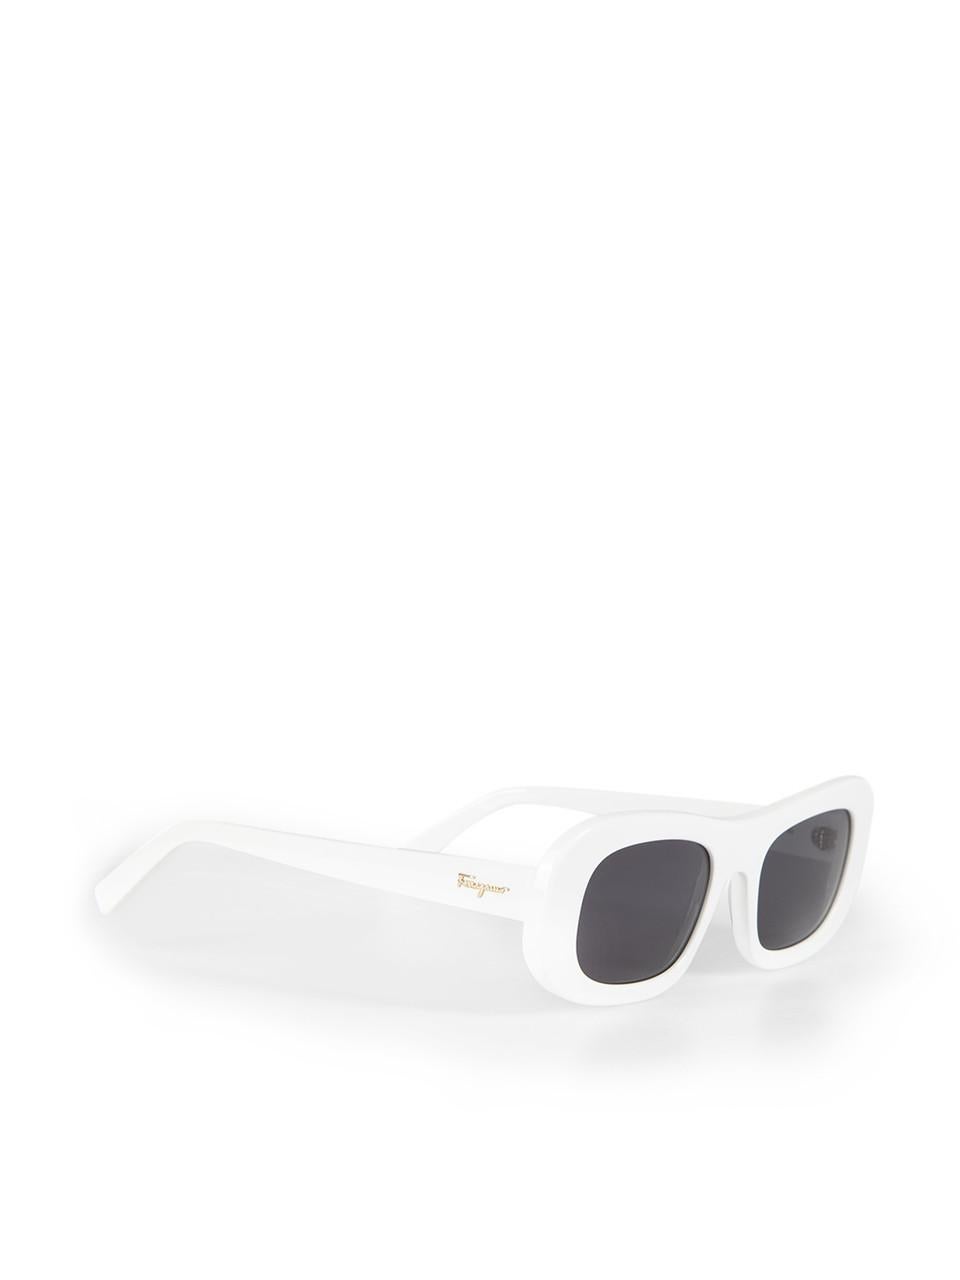 Salvatore Ferragamo White Rectangle Tinted Sunglasses In New Condition For Sale In London, GB